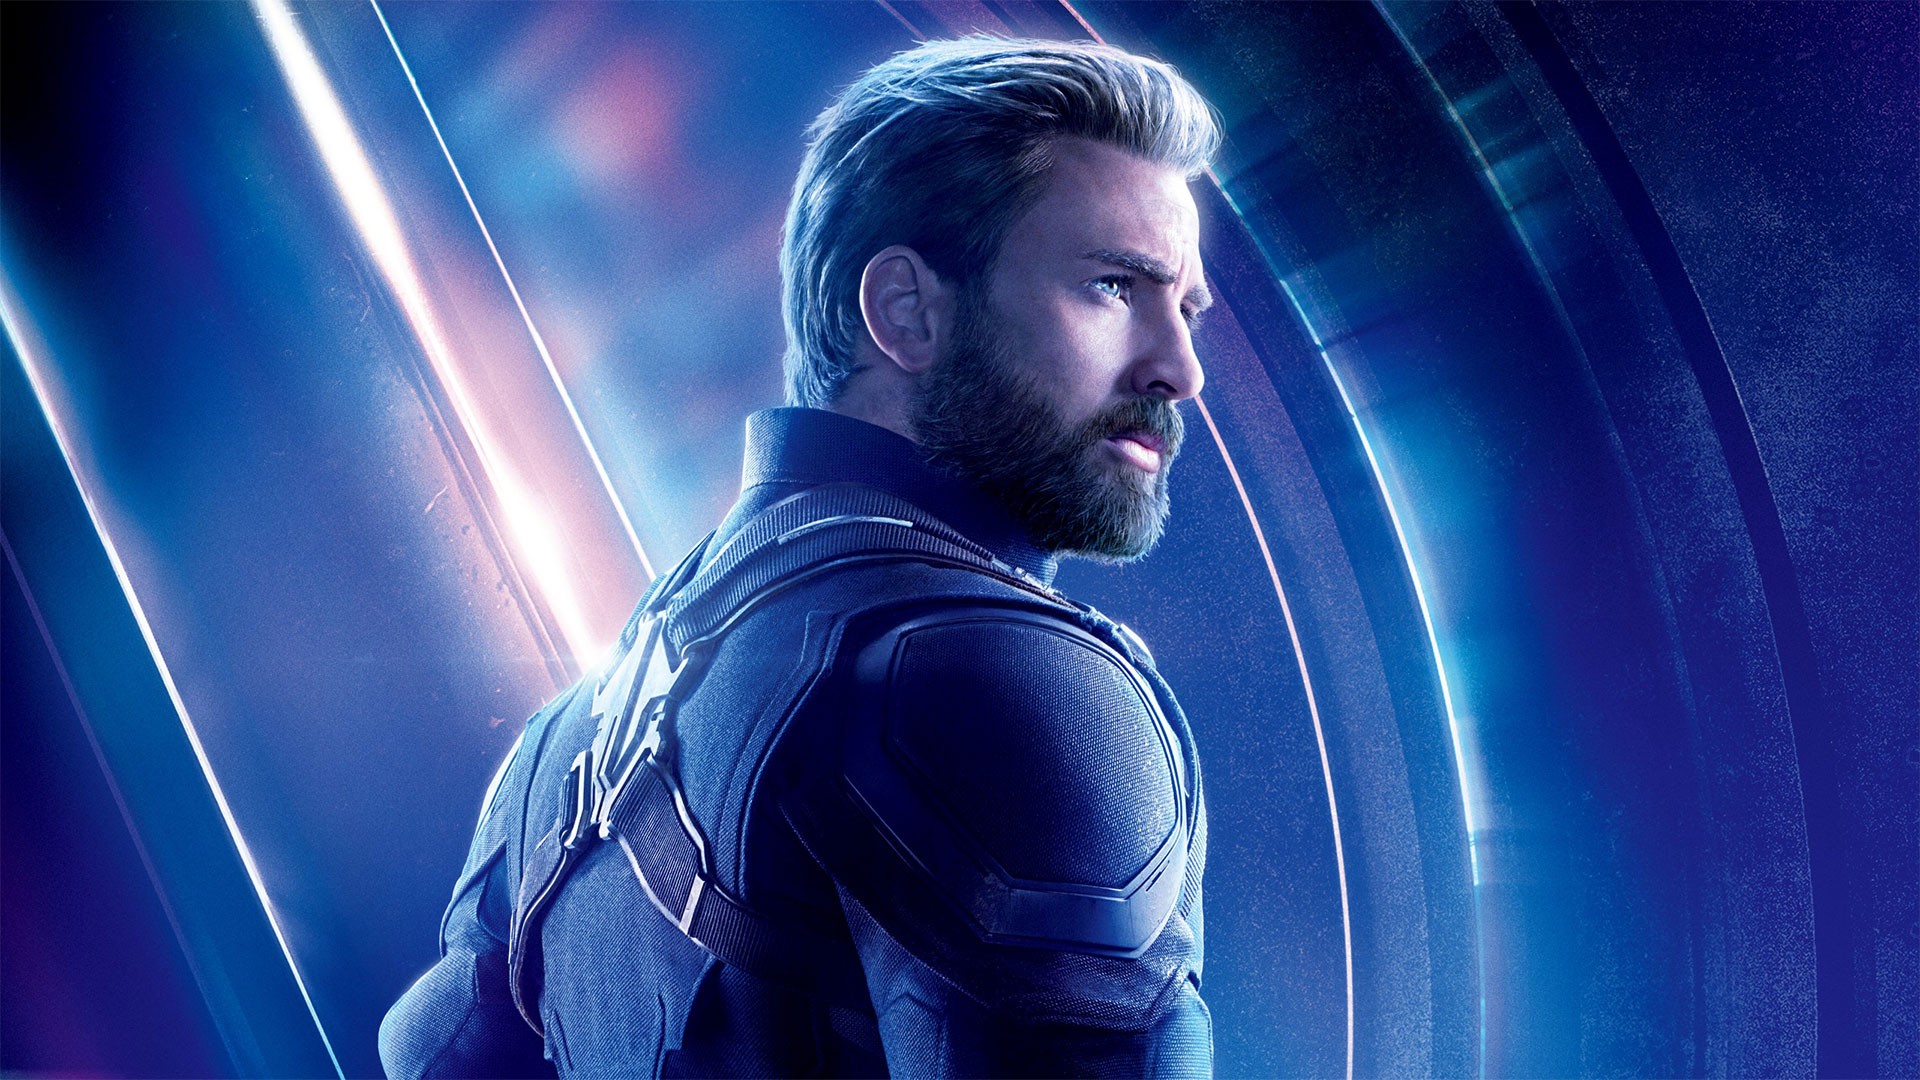 Chris Evans Captain America Avengers Endgame Wallpaper - Avengers Endgame Captain America , HD Wallpaper & Backgrounds